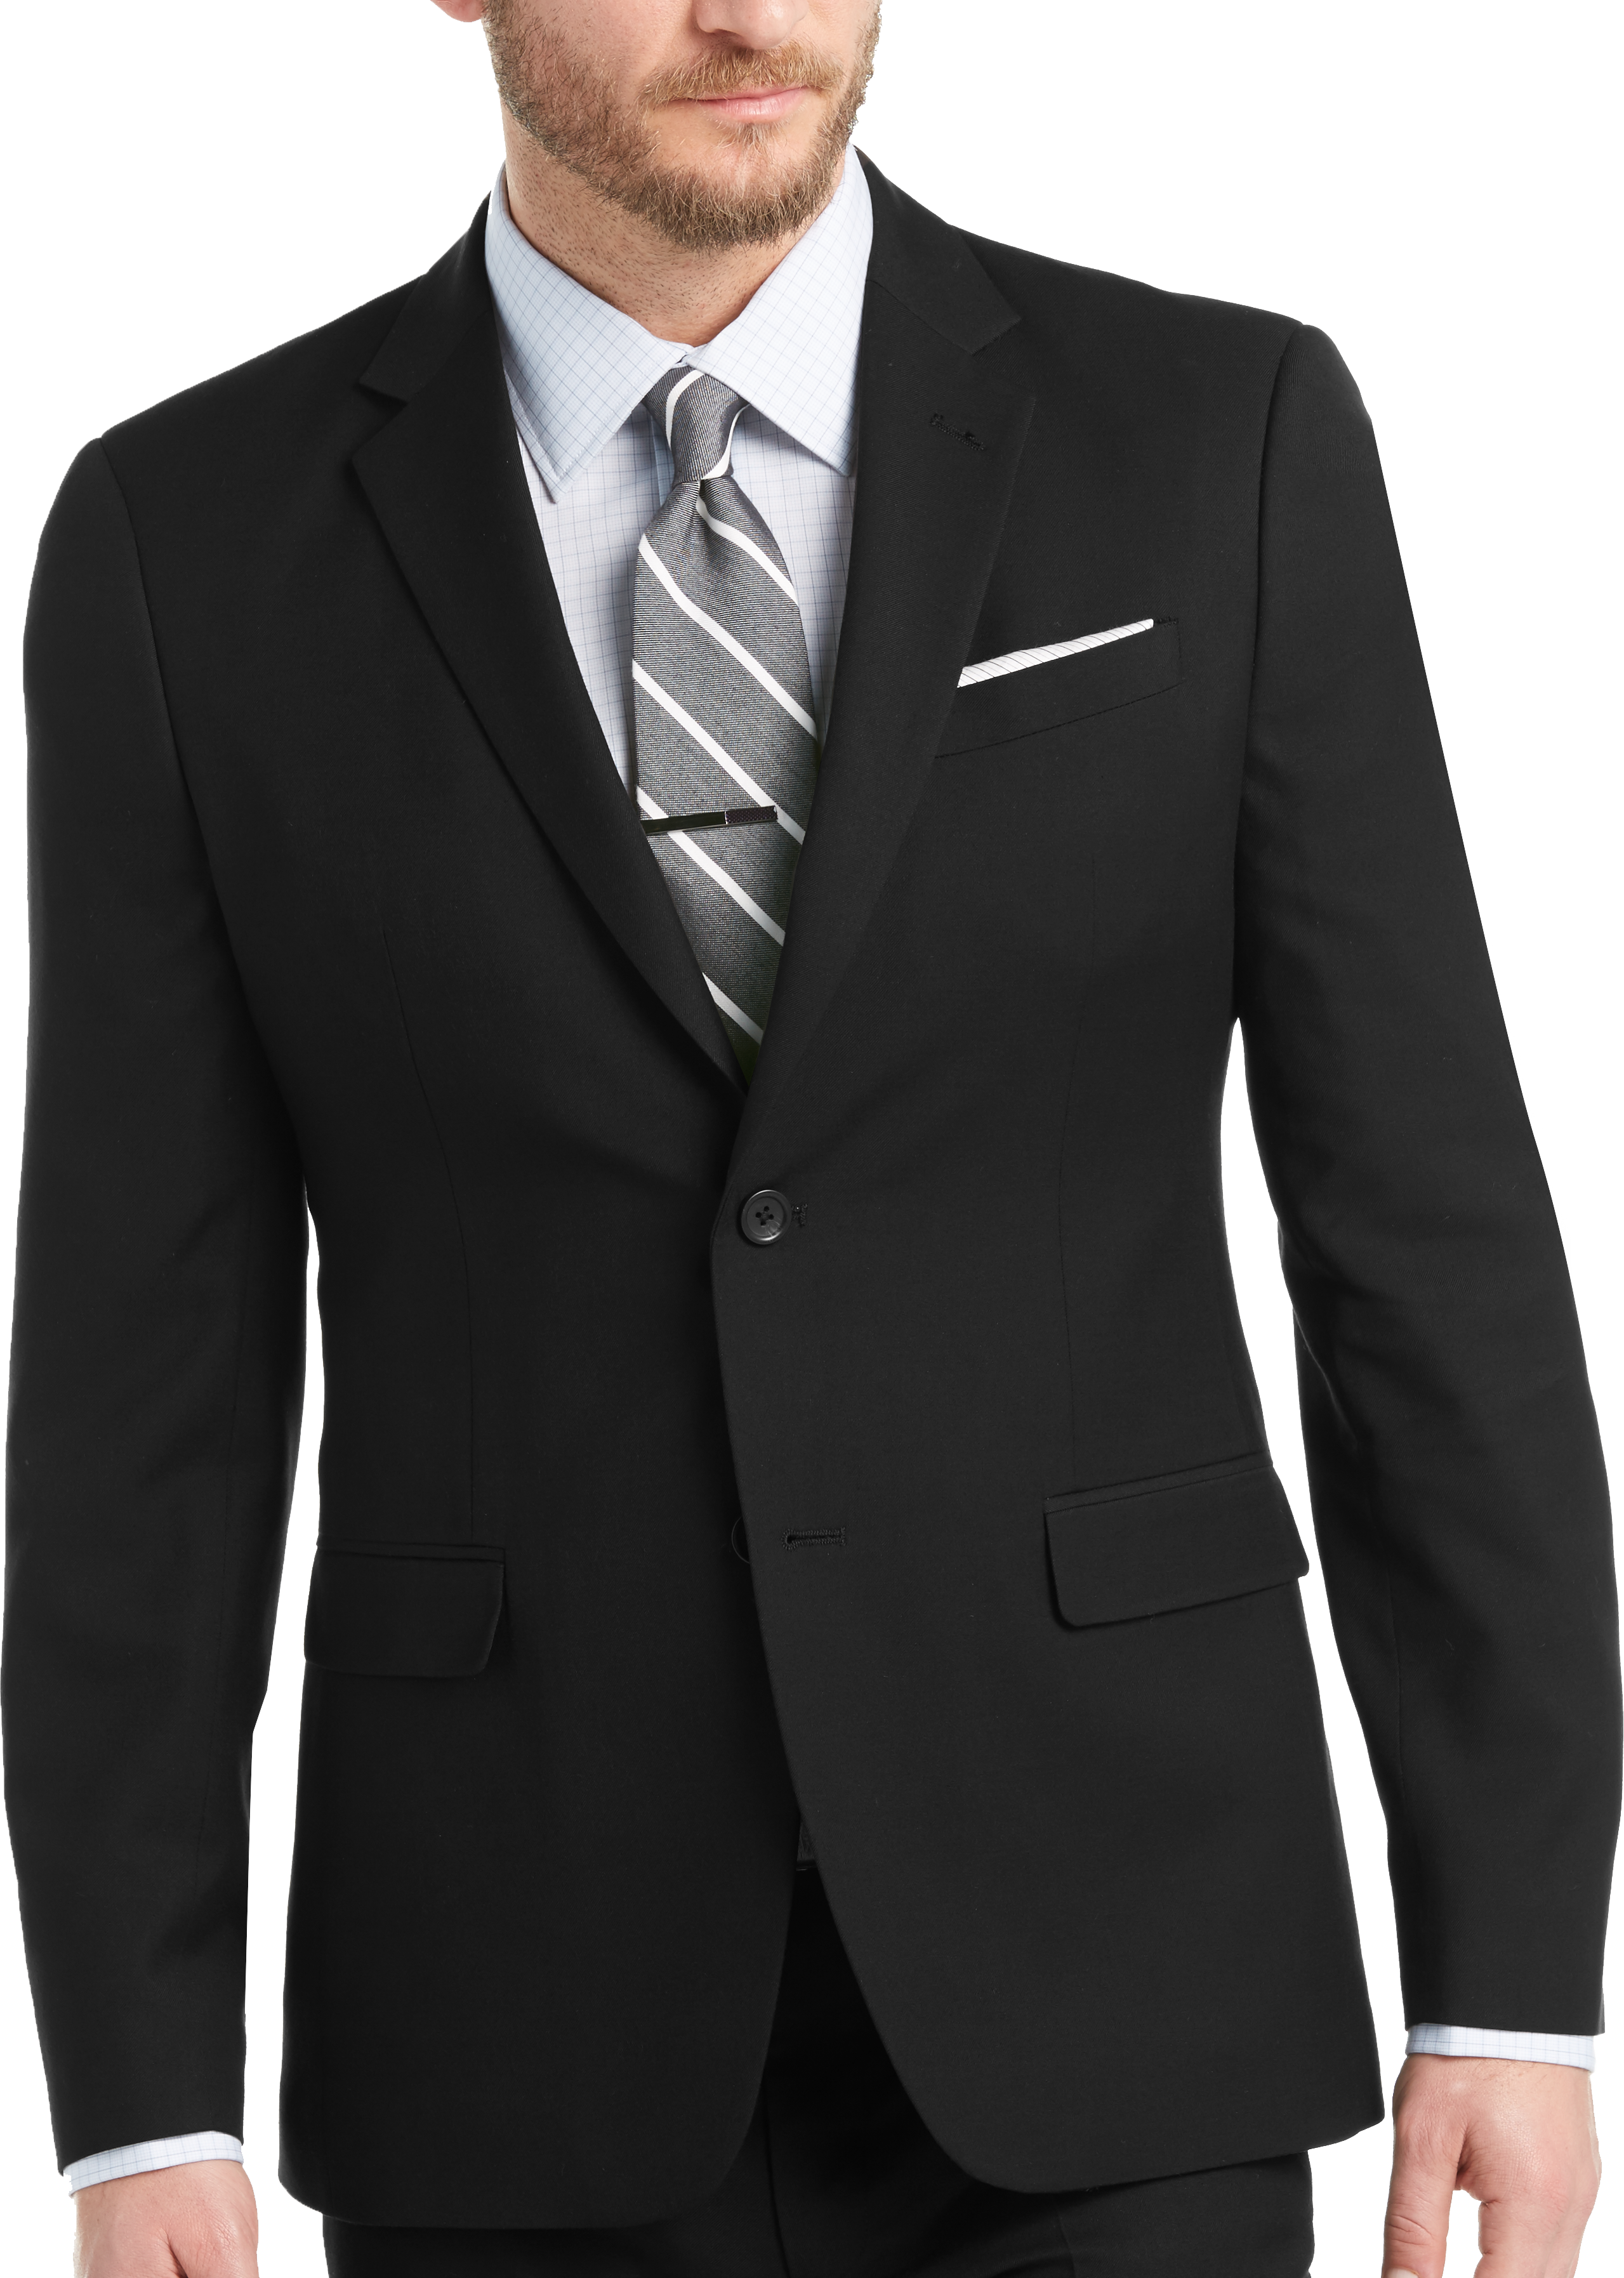 Egara Skinny Fit Suit, Black - Men's Clothing | Men's Wearhouse